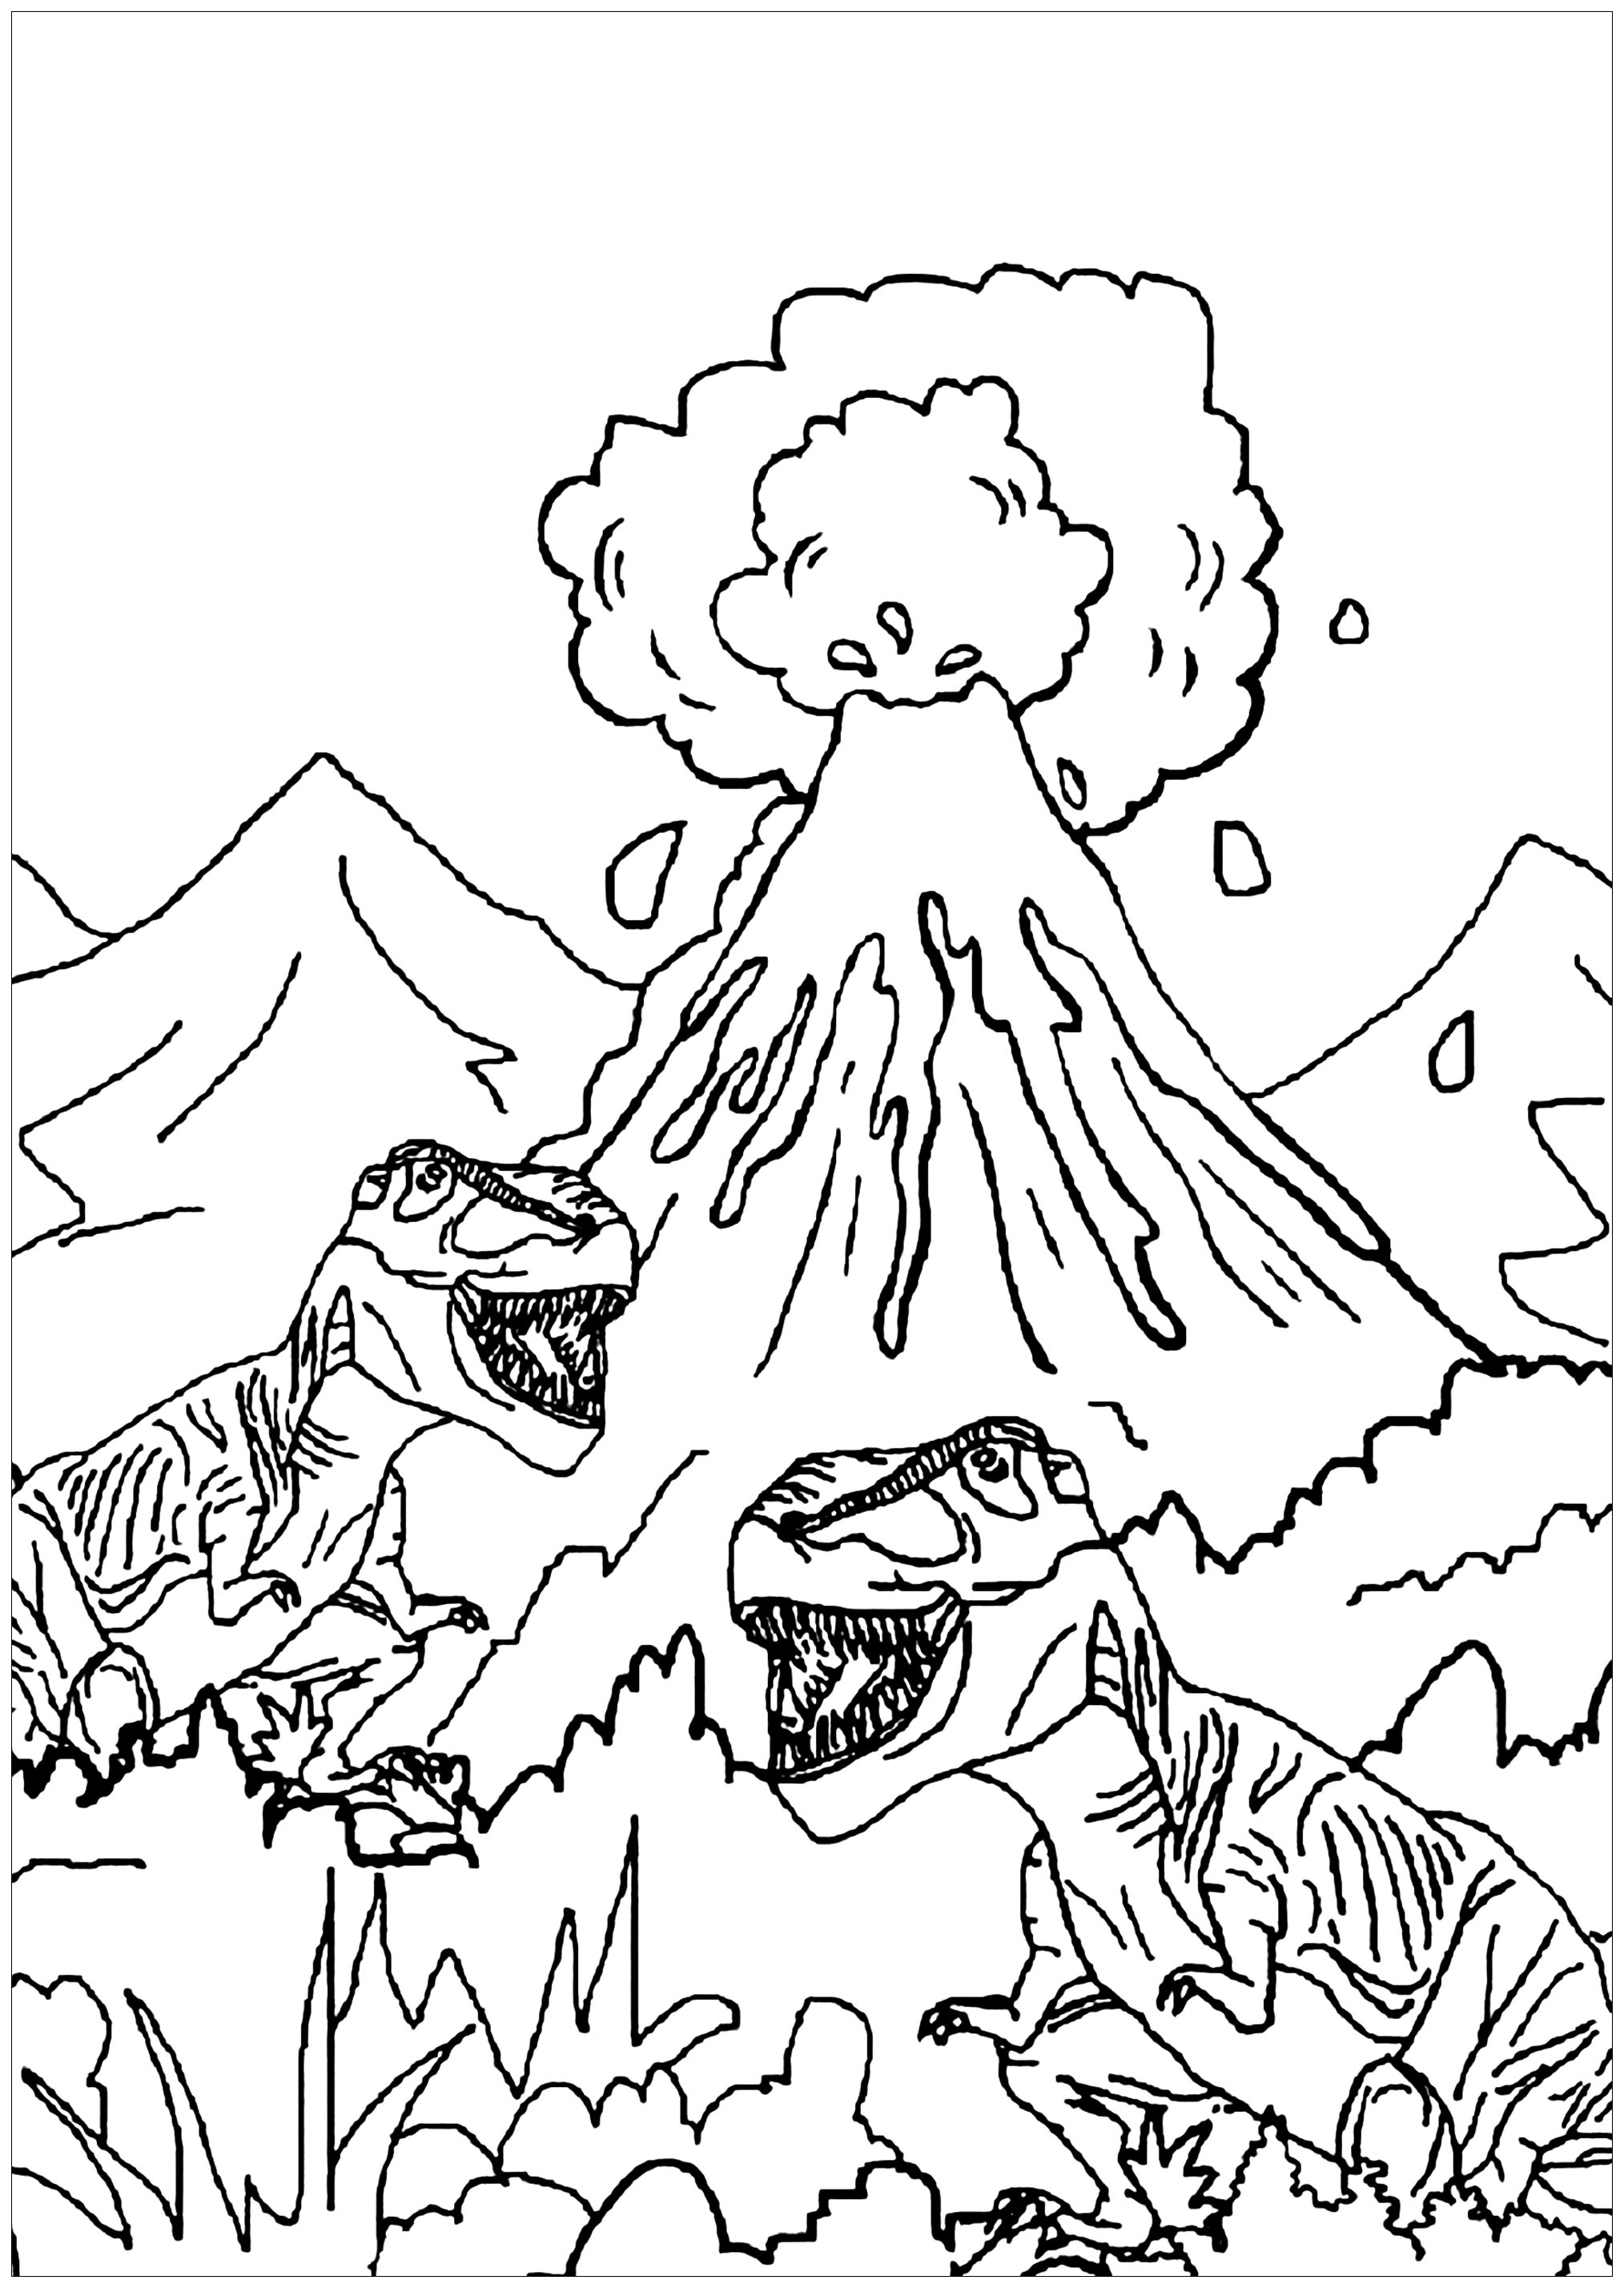 Ces deux tyrannosaures se promène autour d'un volcan